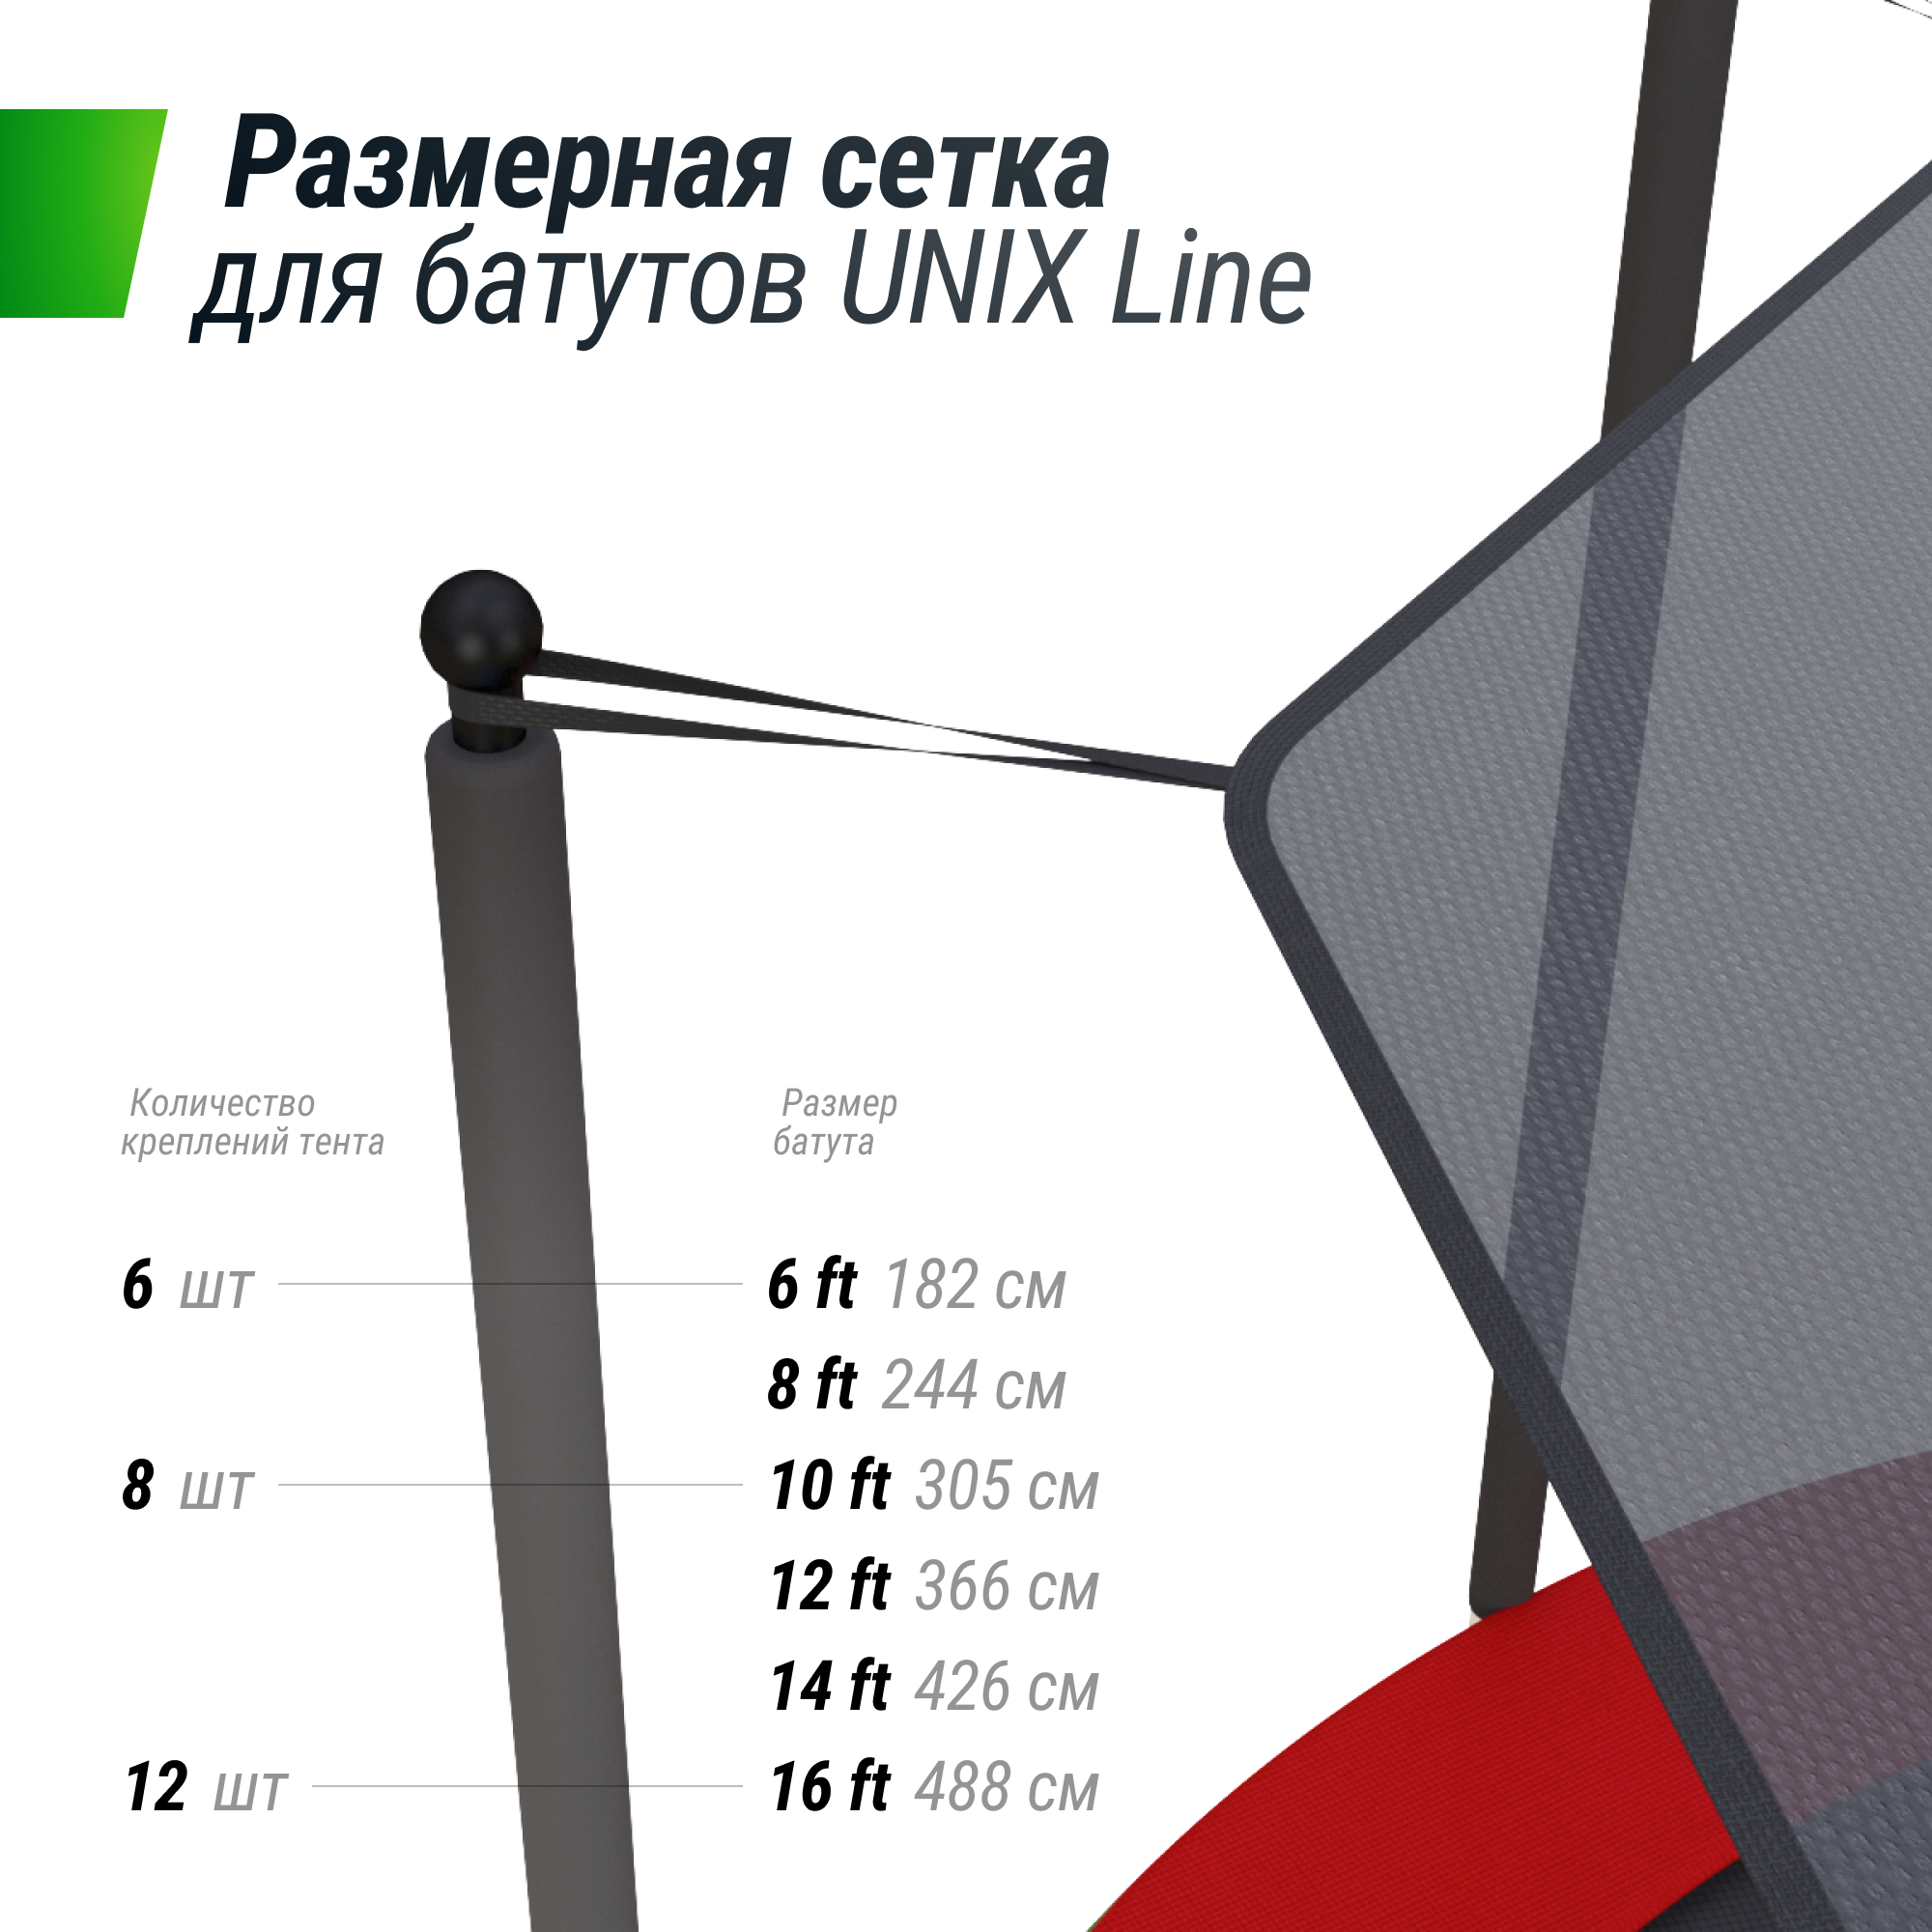 Солнцезащитный тент UNIX Line 244 см (8 ft)